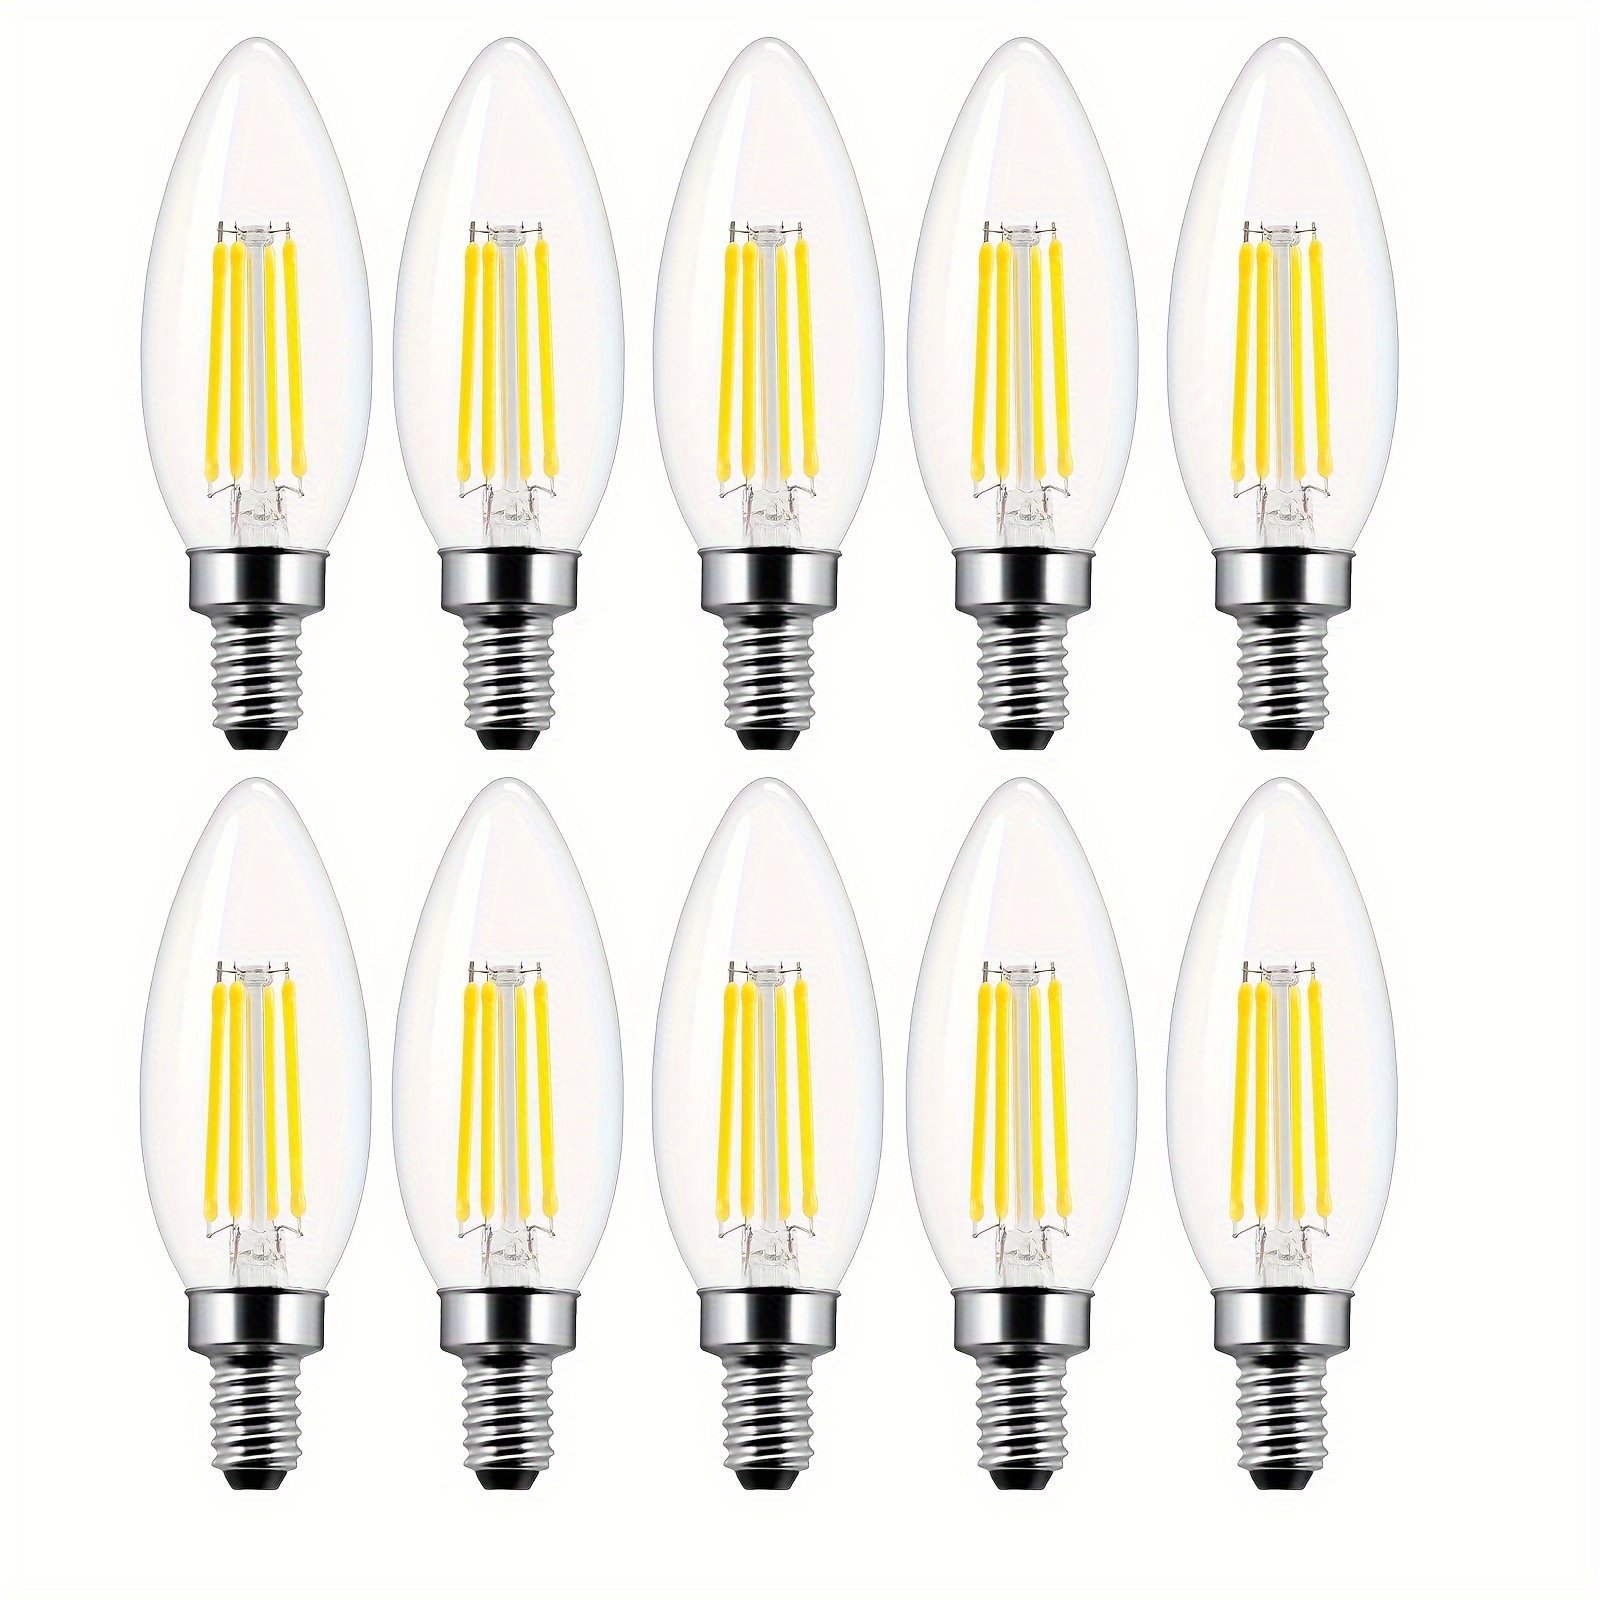 Superbright LED C7 E12 70lm LED C7 E14 Night Light Bulbs - China